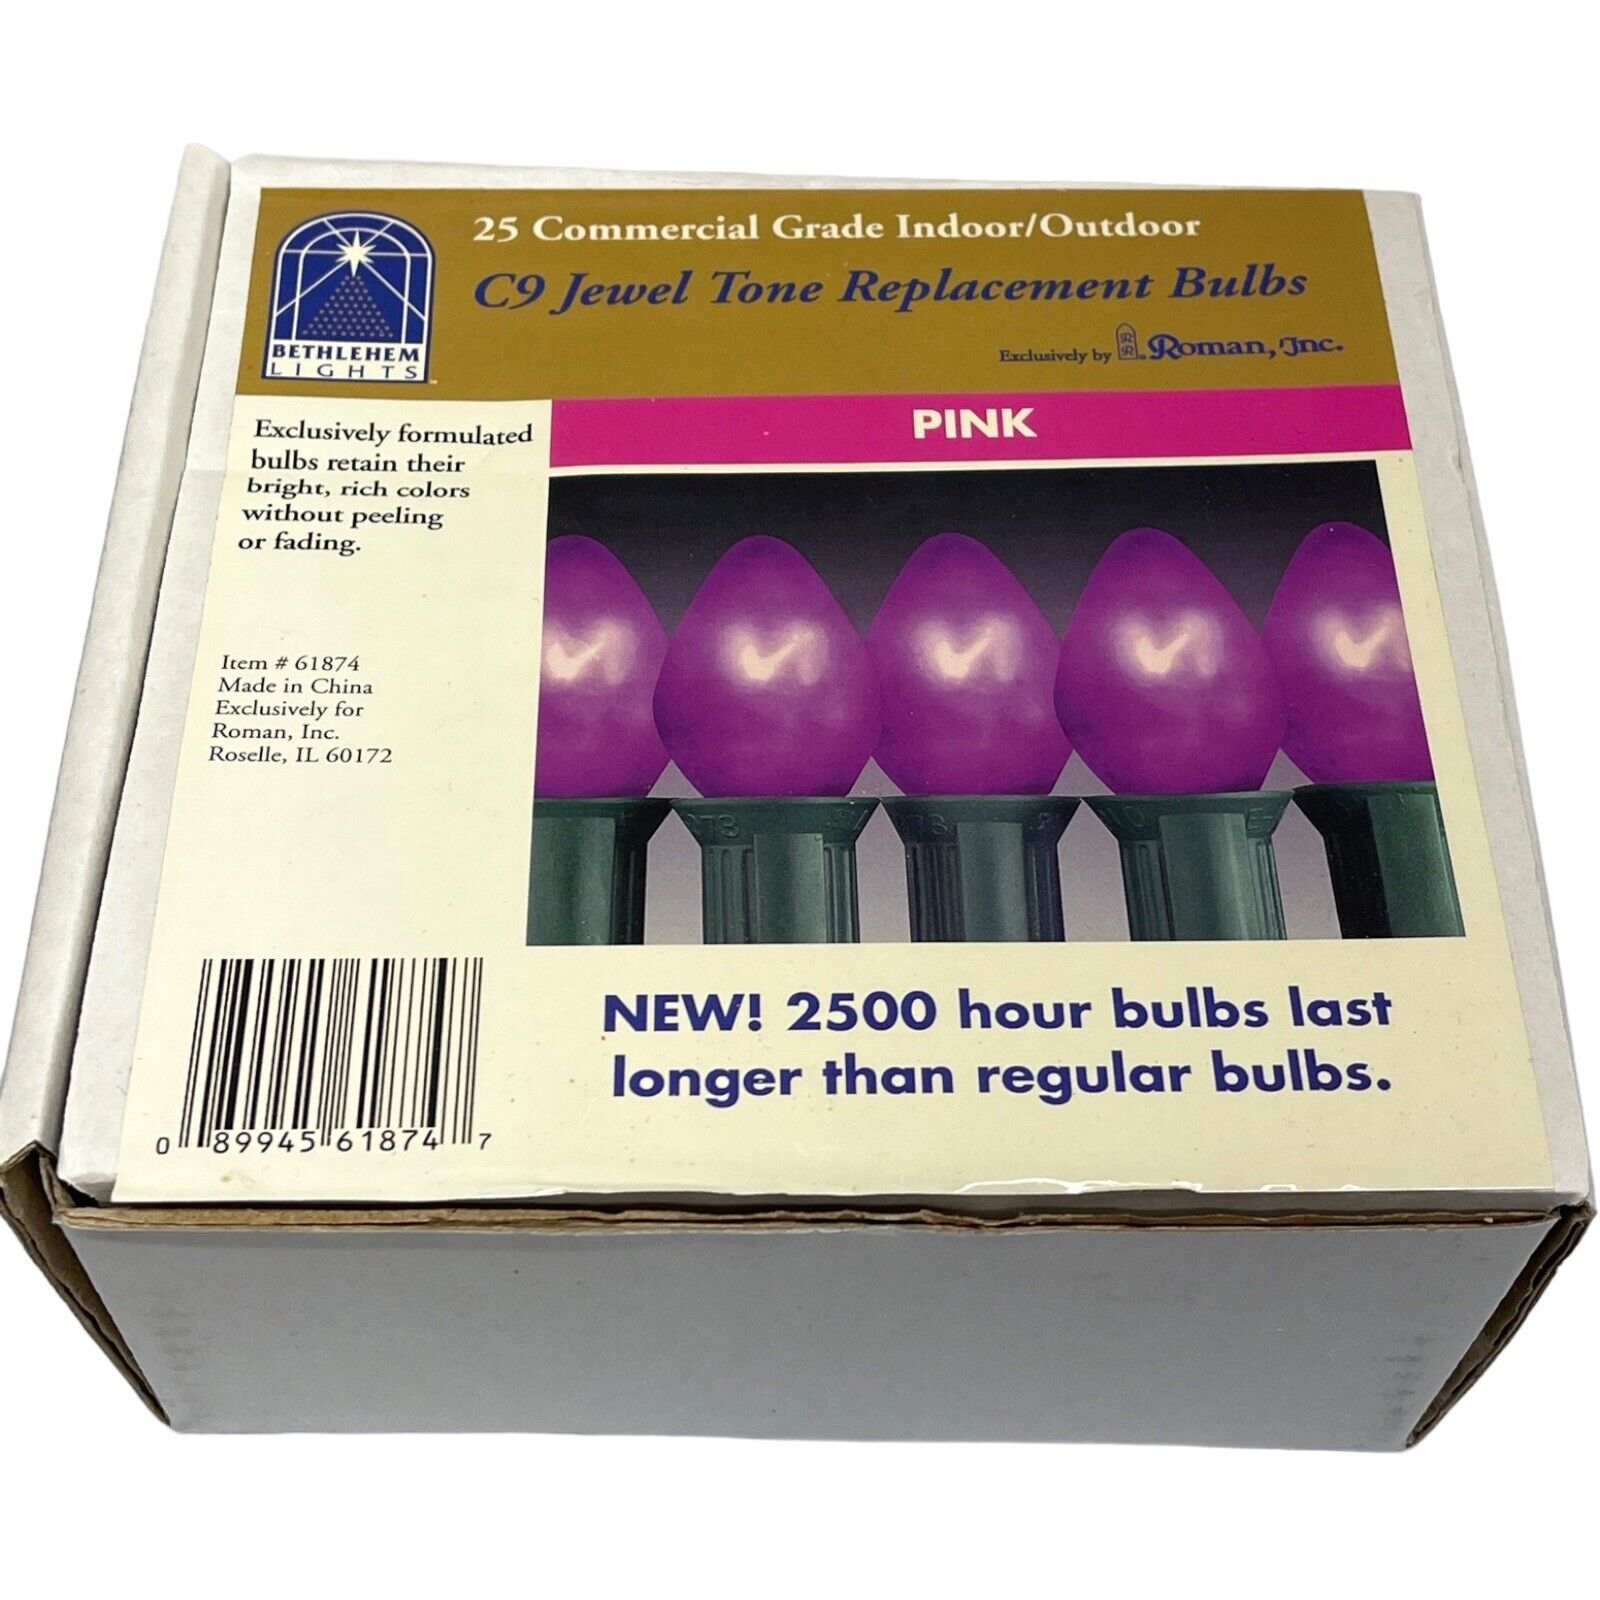 NOS Vintage 1997 Bethlehem Lights 61874 25/C9 Pink Jewel Tone Christmas Bulbs